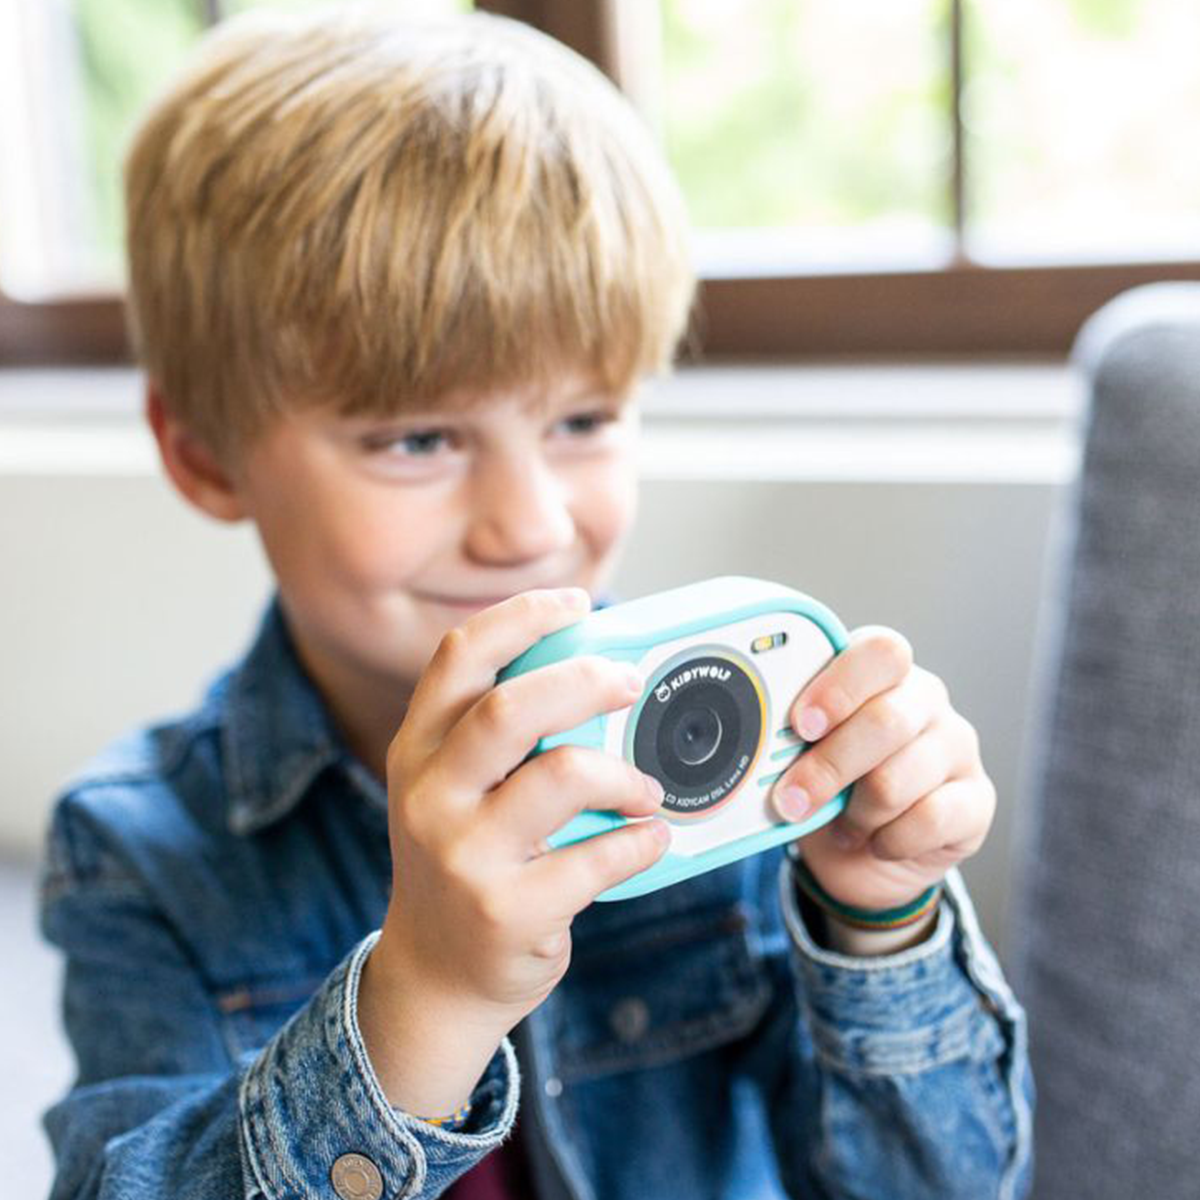 Say Cheese! Met deze superleuke kidycam action camera van Kidywolf in orange kan je kindje al zijn of haar favoriete momenten vastleggen! De camera is speciaal ontworpen om een optimale grip mogelijk te maken. VanZus